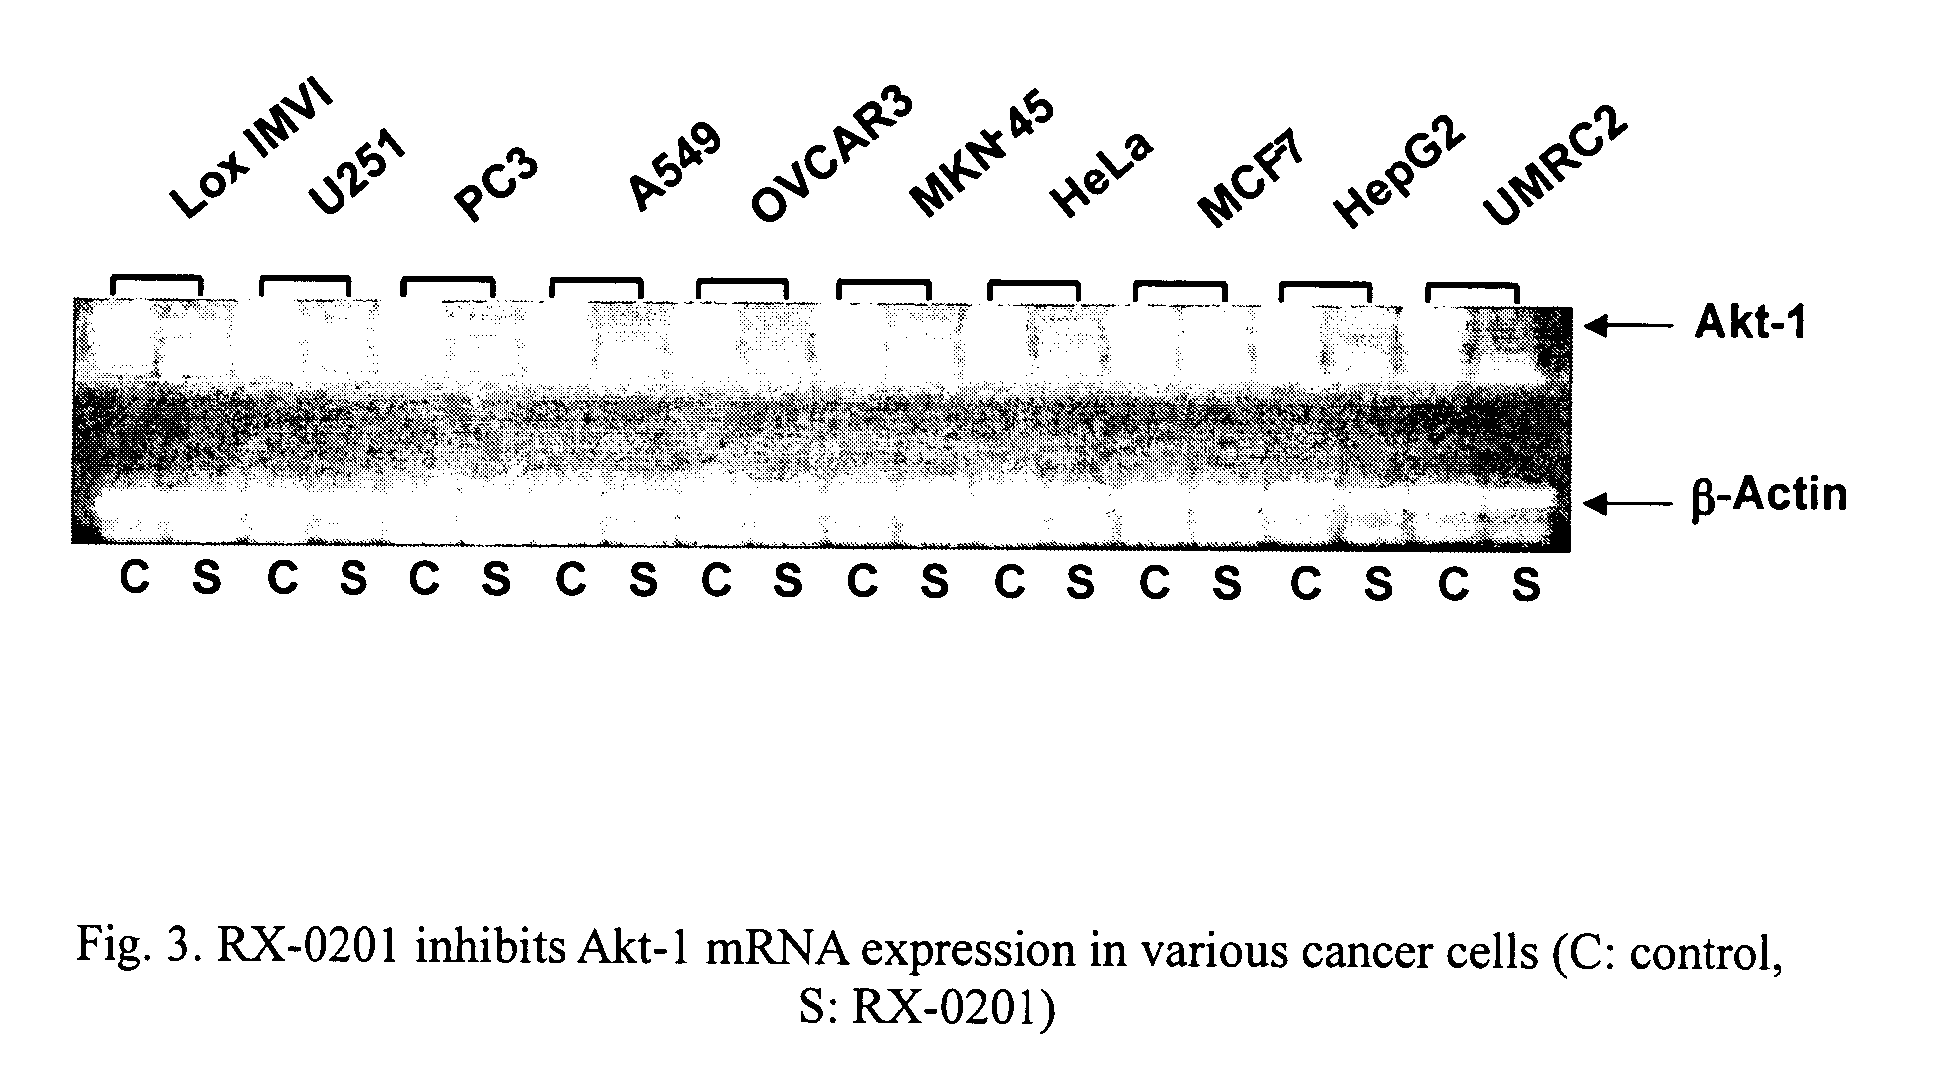 Use of antisense oligonucleotides to inhibit the expression of human Akt-1